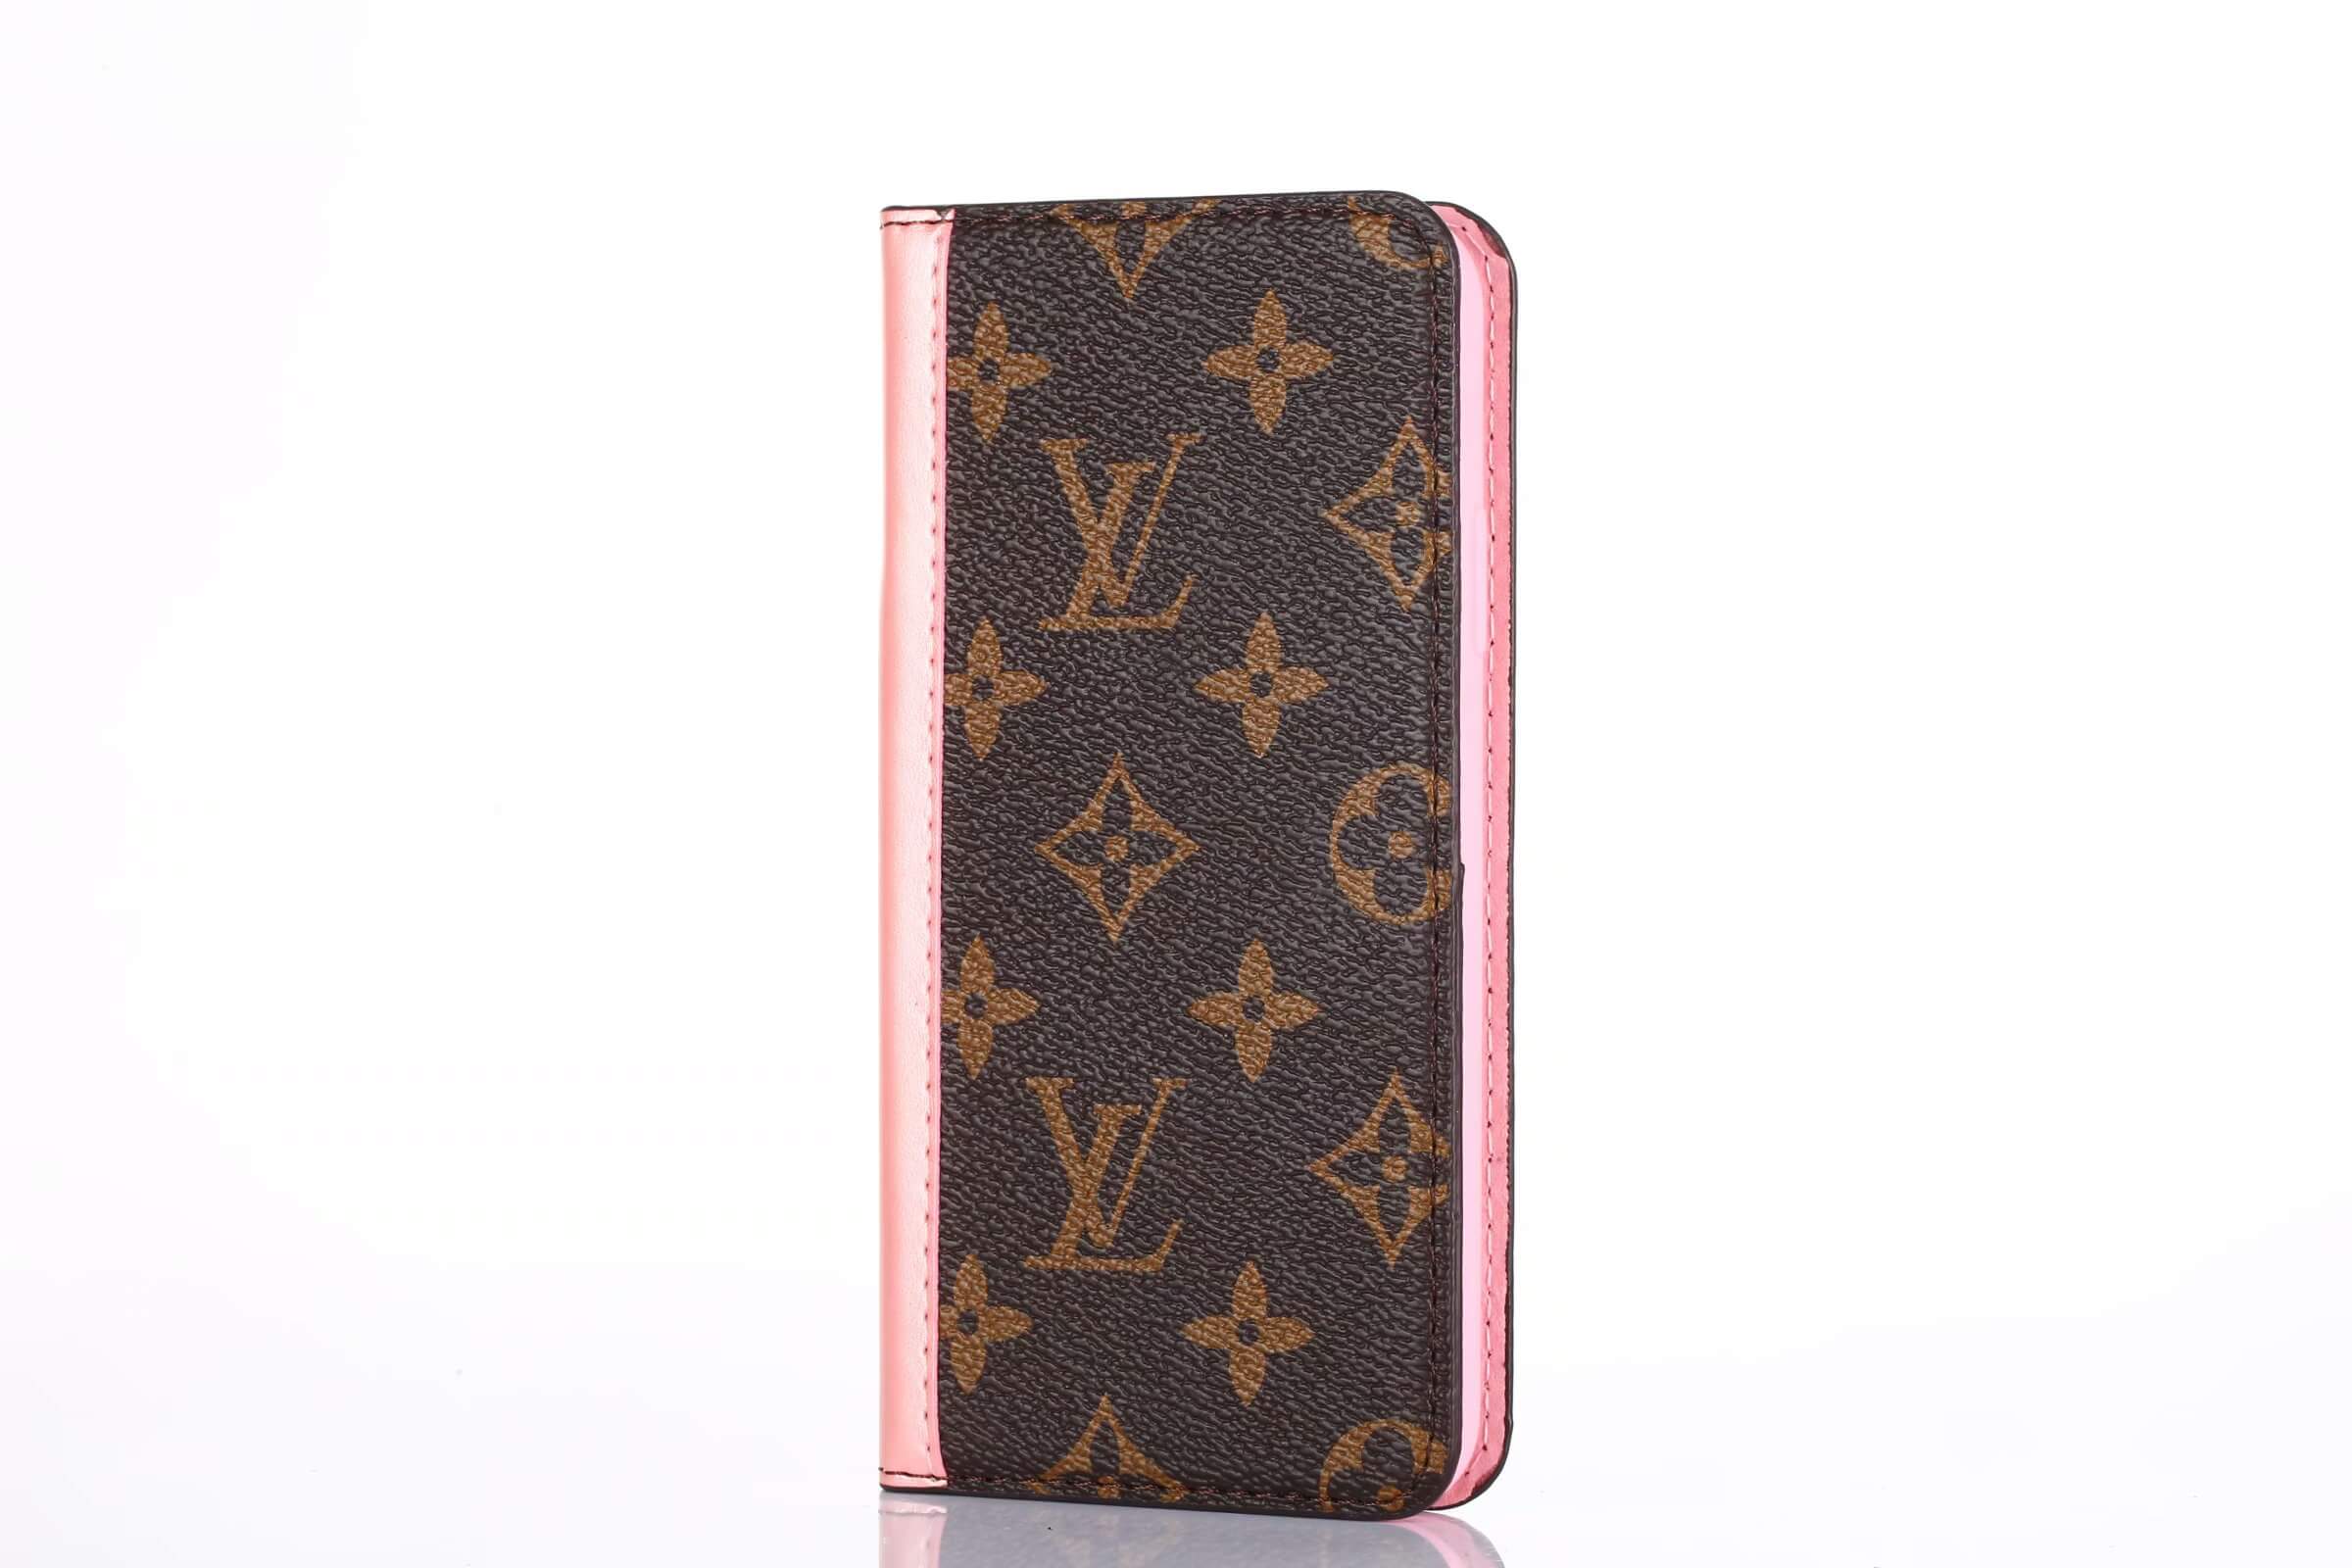 Vuitton iPhone 12 Pro Max Flip Cases